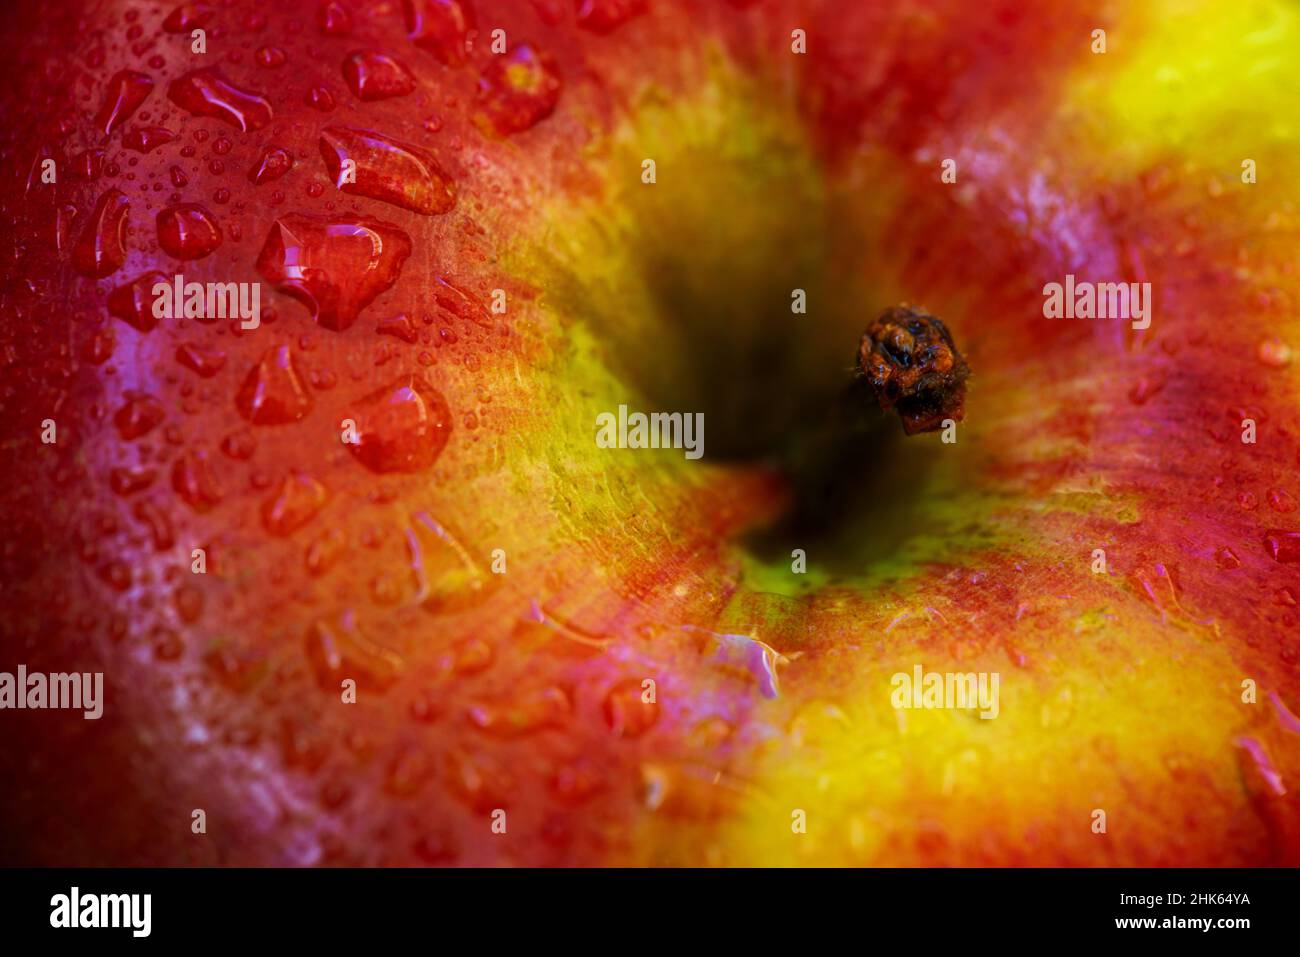 Roter und grüner Apfel aus der Nähe, farbenfrohe frische Früchte Hintergrund Stockfoto